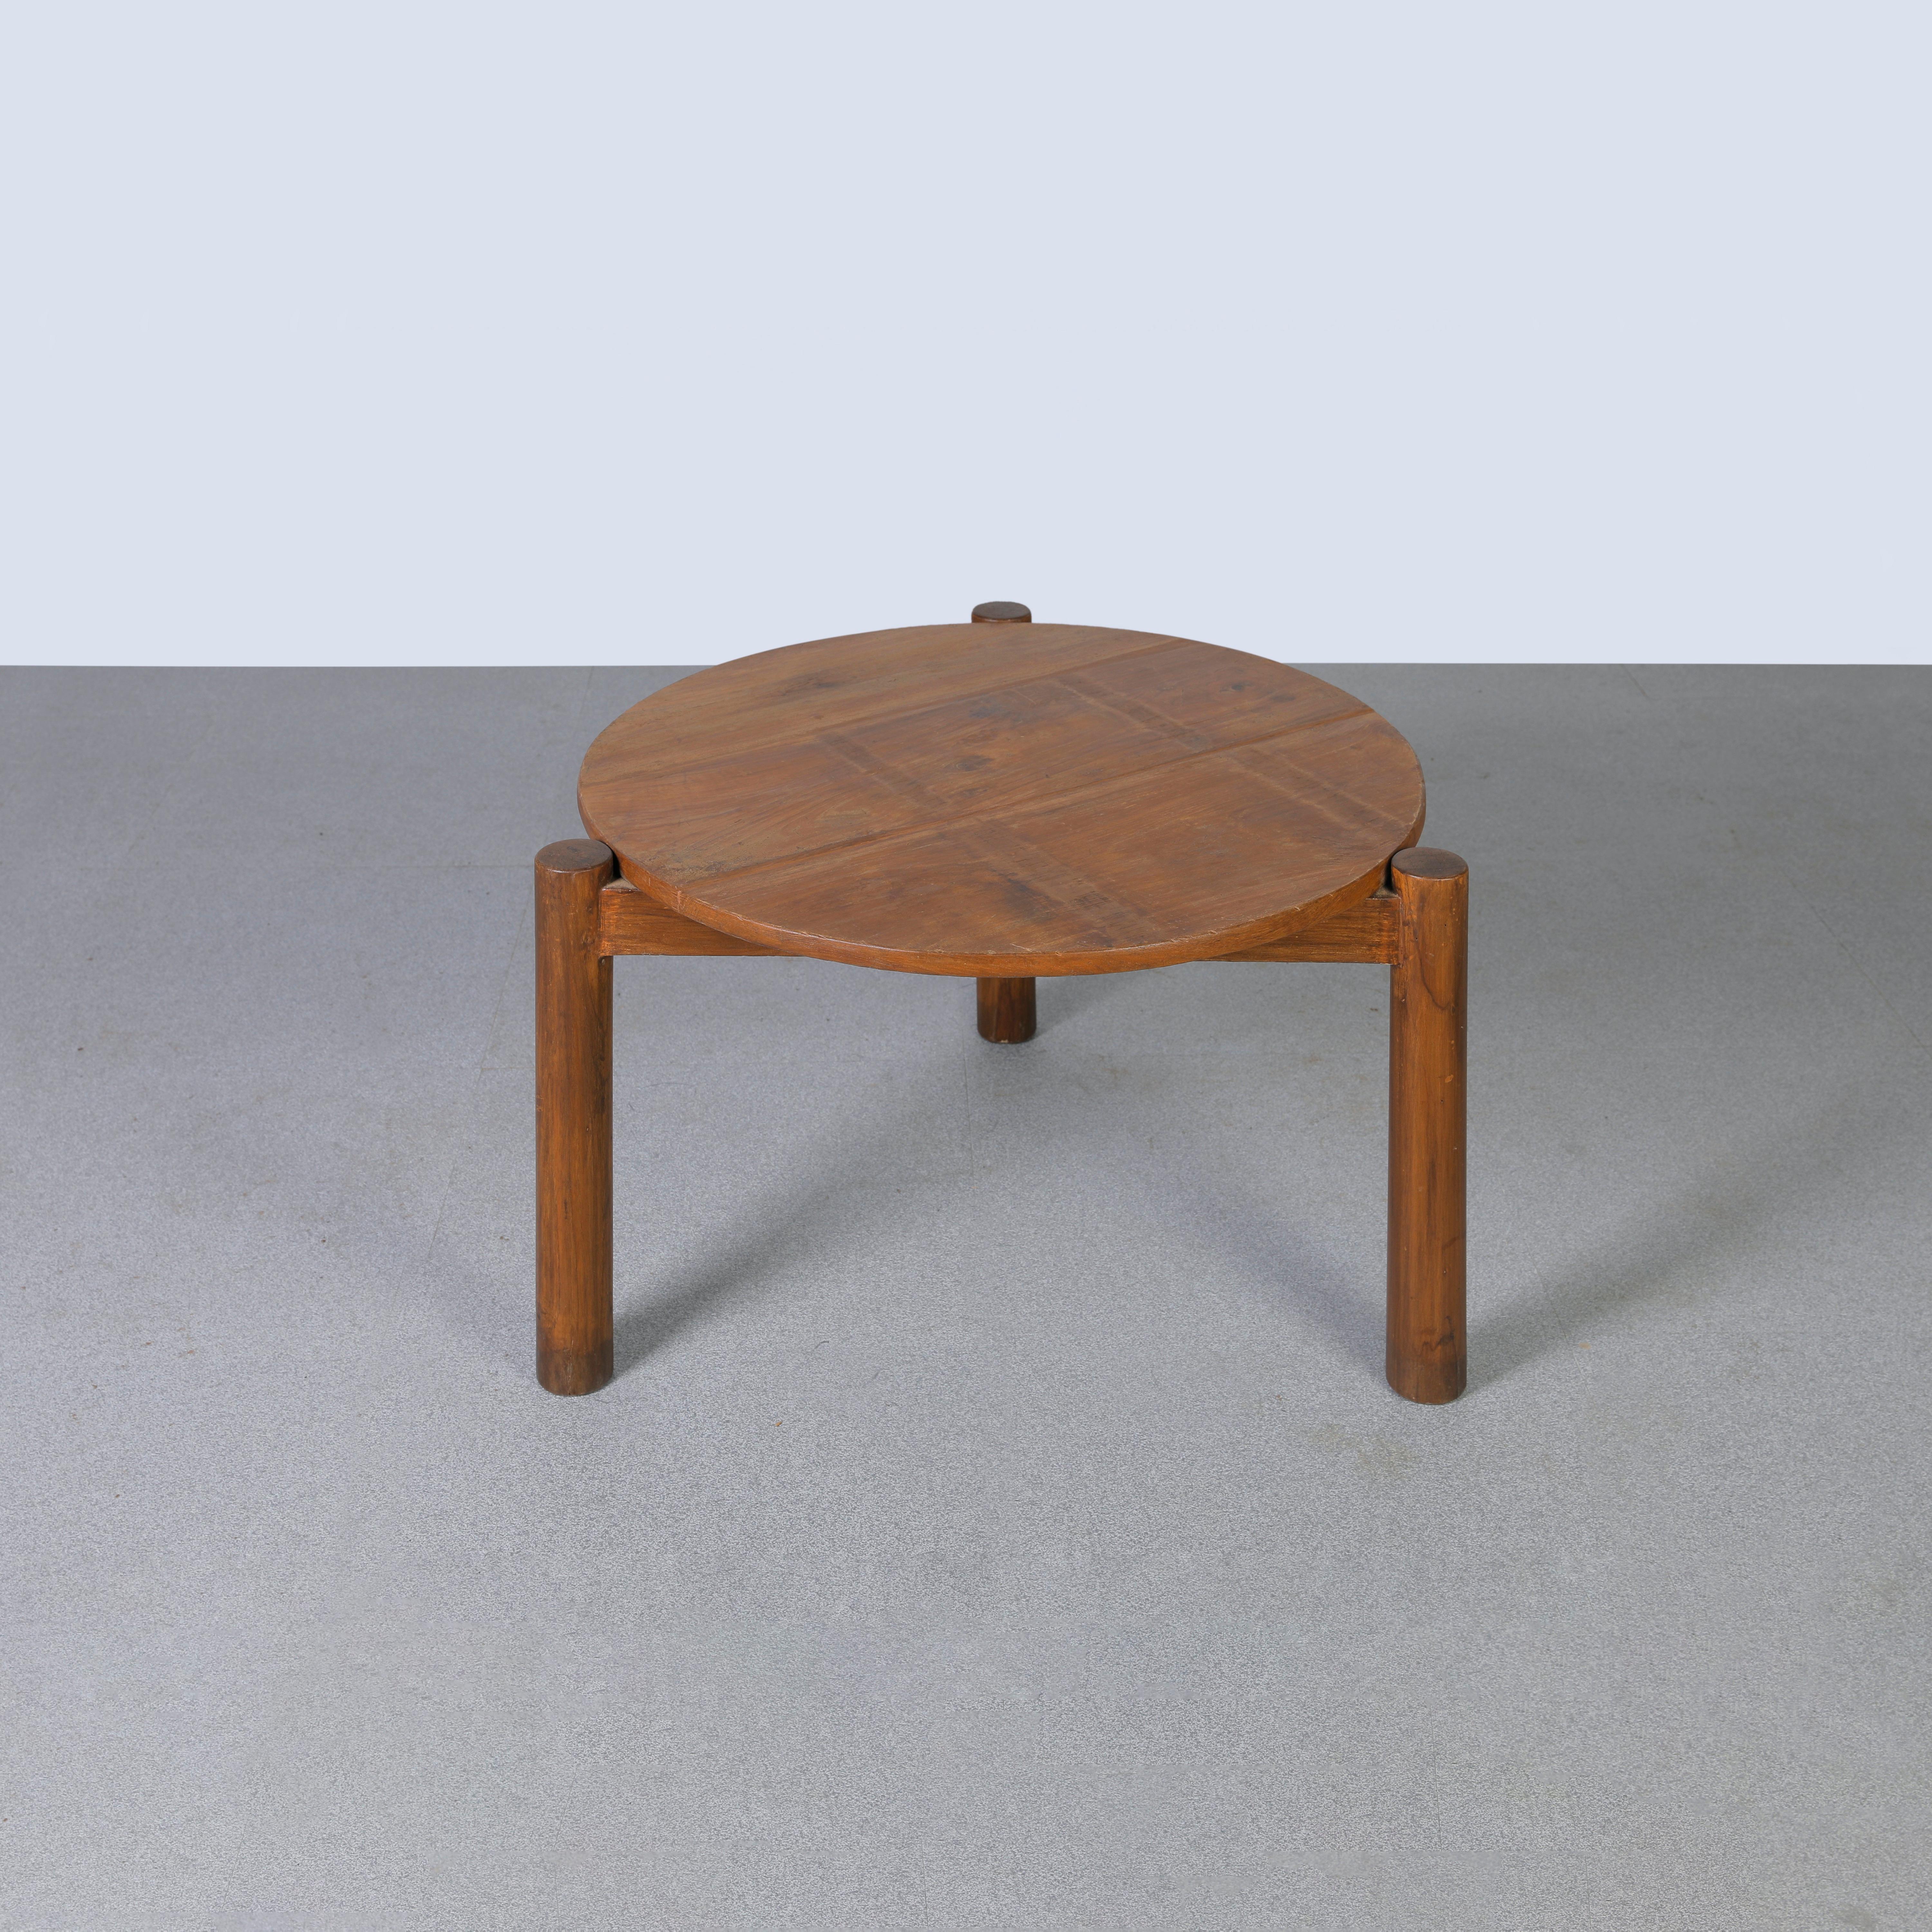 Dieser niedrige runde Tisch ist eine Design-Ikone. Es ist roh in seiner Einfachheit und zeigt ein leicht patiniertes Material. Seine Form ist schön zerbrechlich und hat eine wunderbare Farbe. Wir restaurieren sie nicht allzu sehr. So bewahren wir so